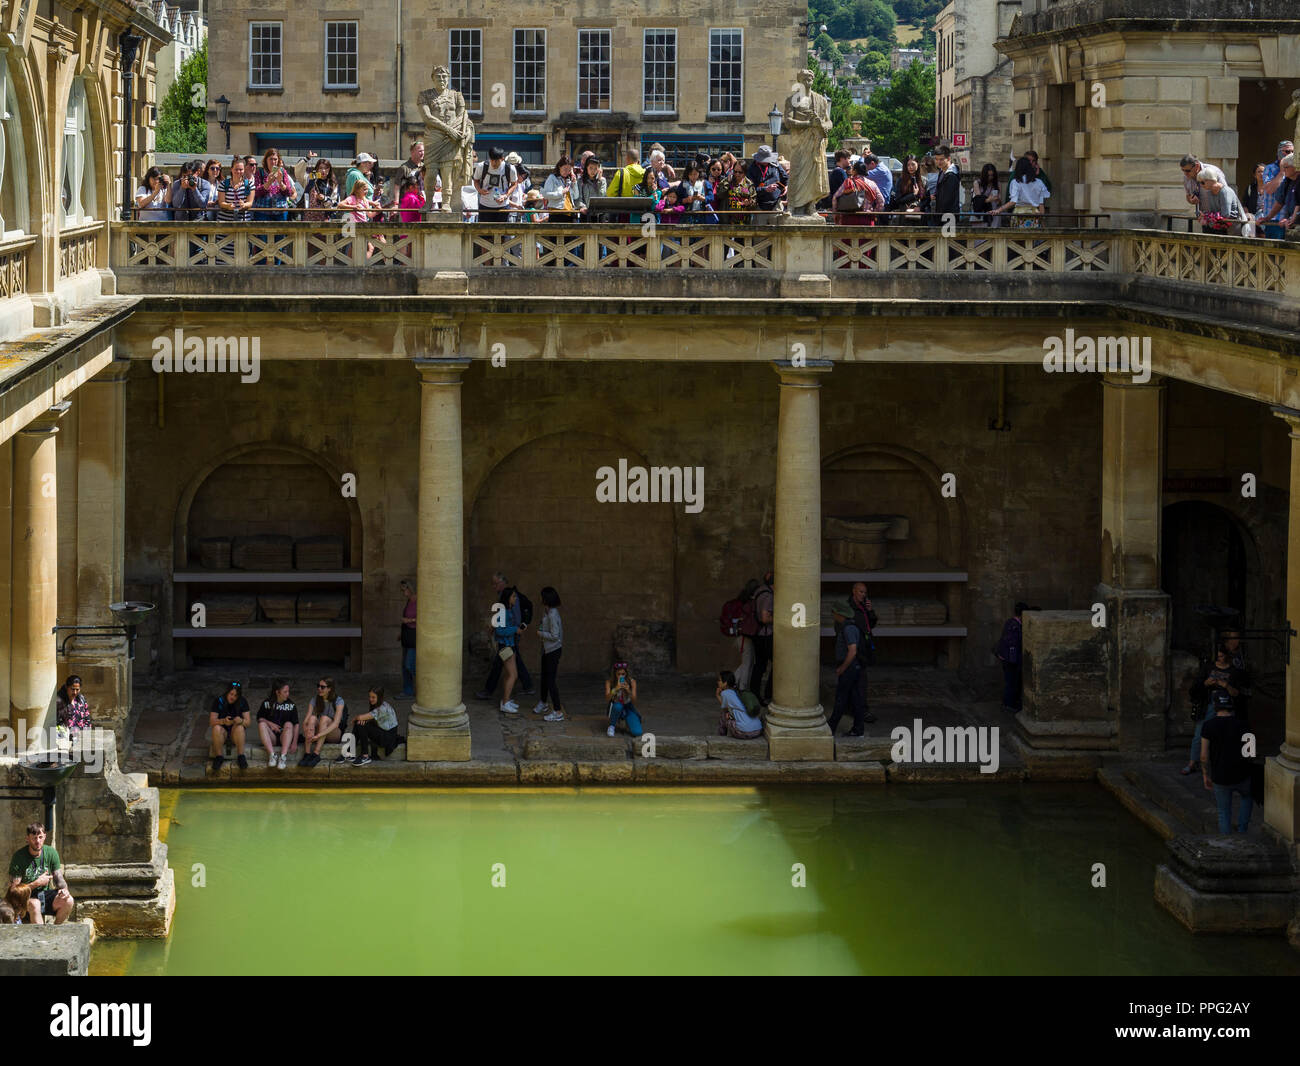 Les visiteurs à la découverte de la terrasse et une grande baignoire des bains romains, dans la ville historique de Bath, Somerset, Angleterre, Royaume-Uni. Banque D'Images